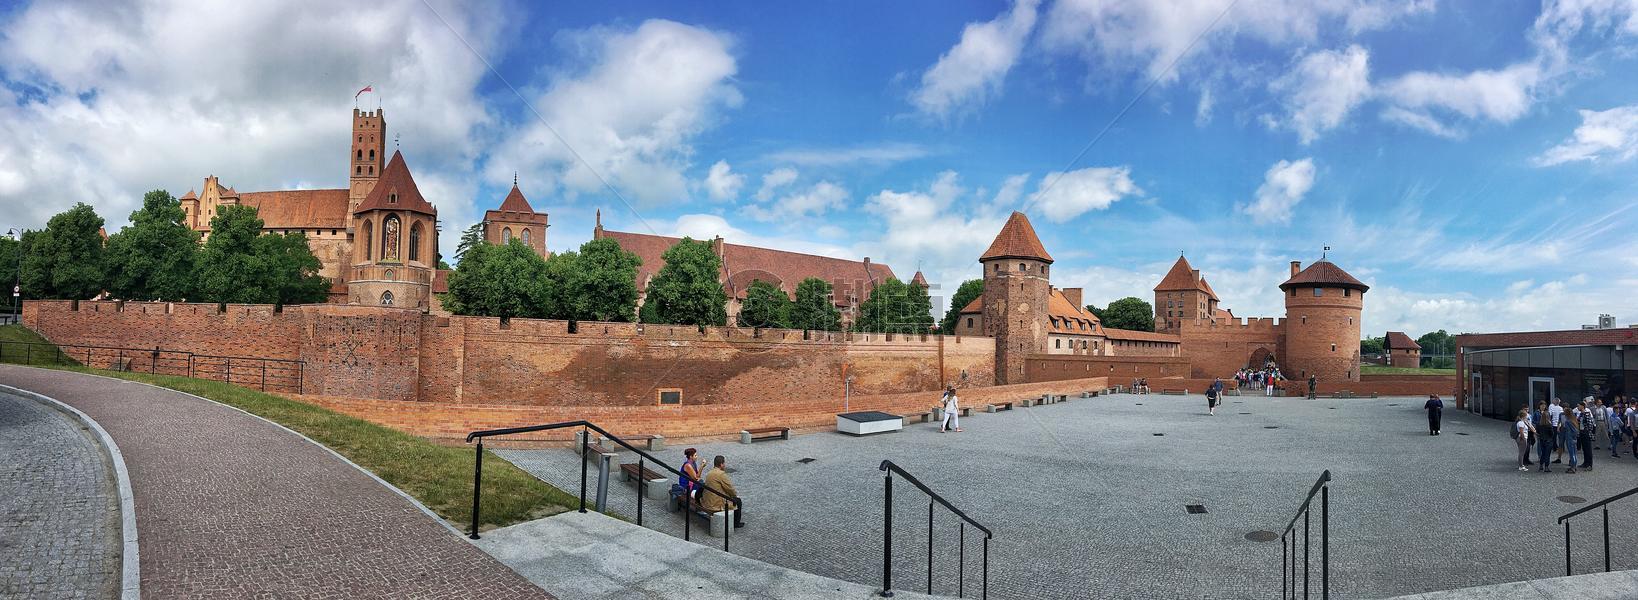 欧洲波兰著名城堡马尔堡全景图图片素材免费下载